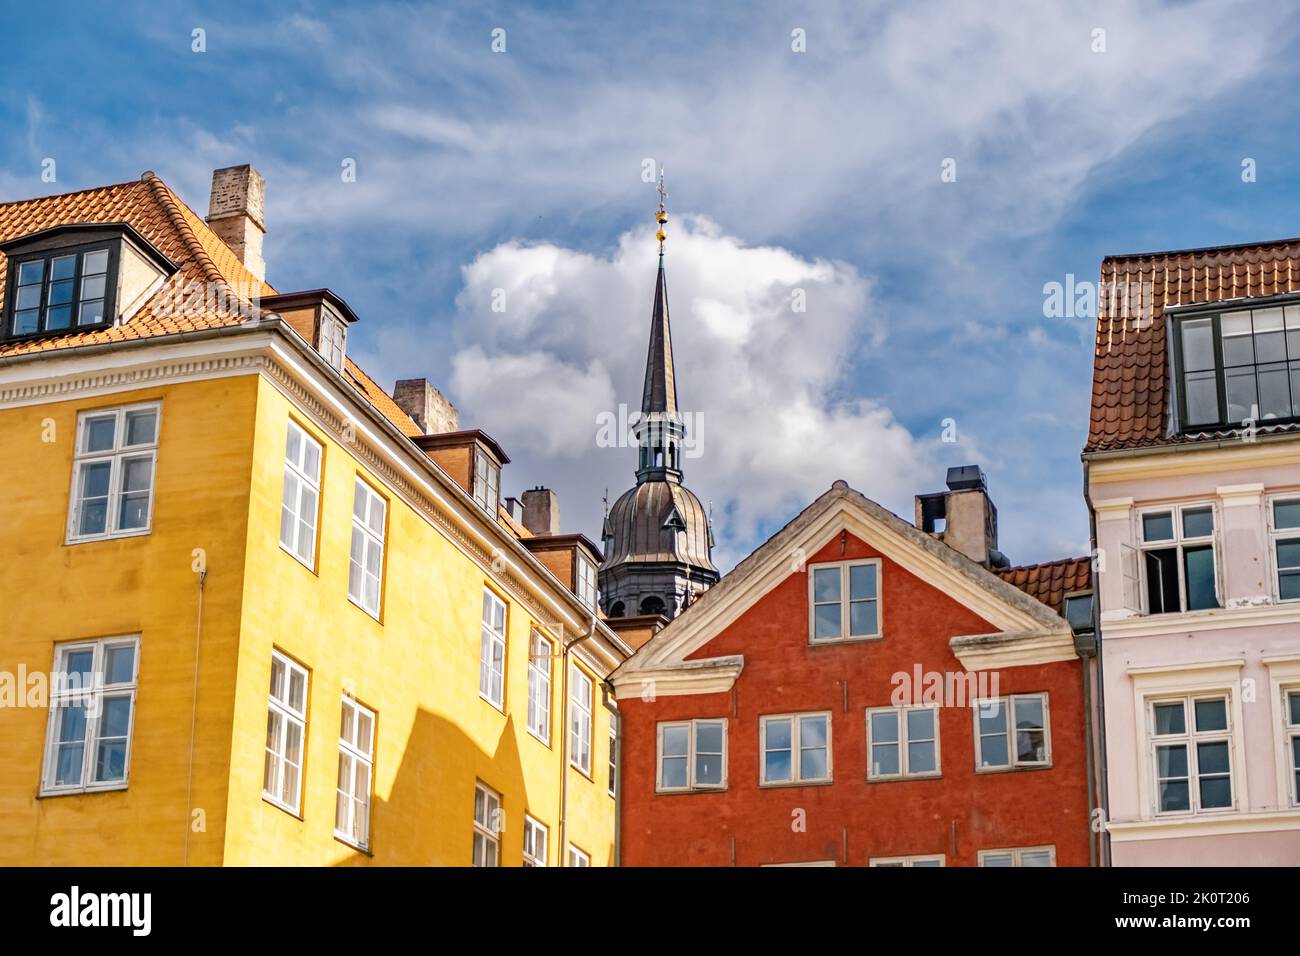 Rooftops and spier in Copenhagen, Denmark Stock Photo